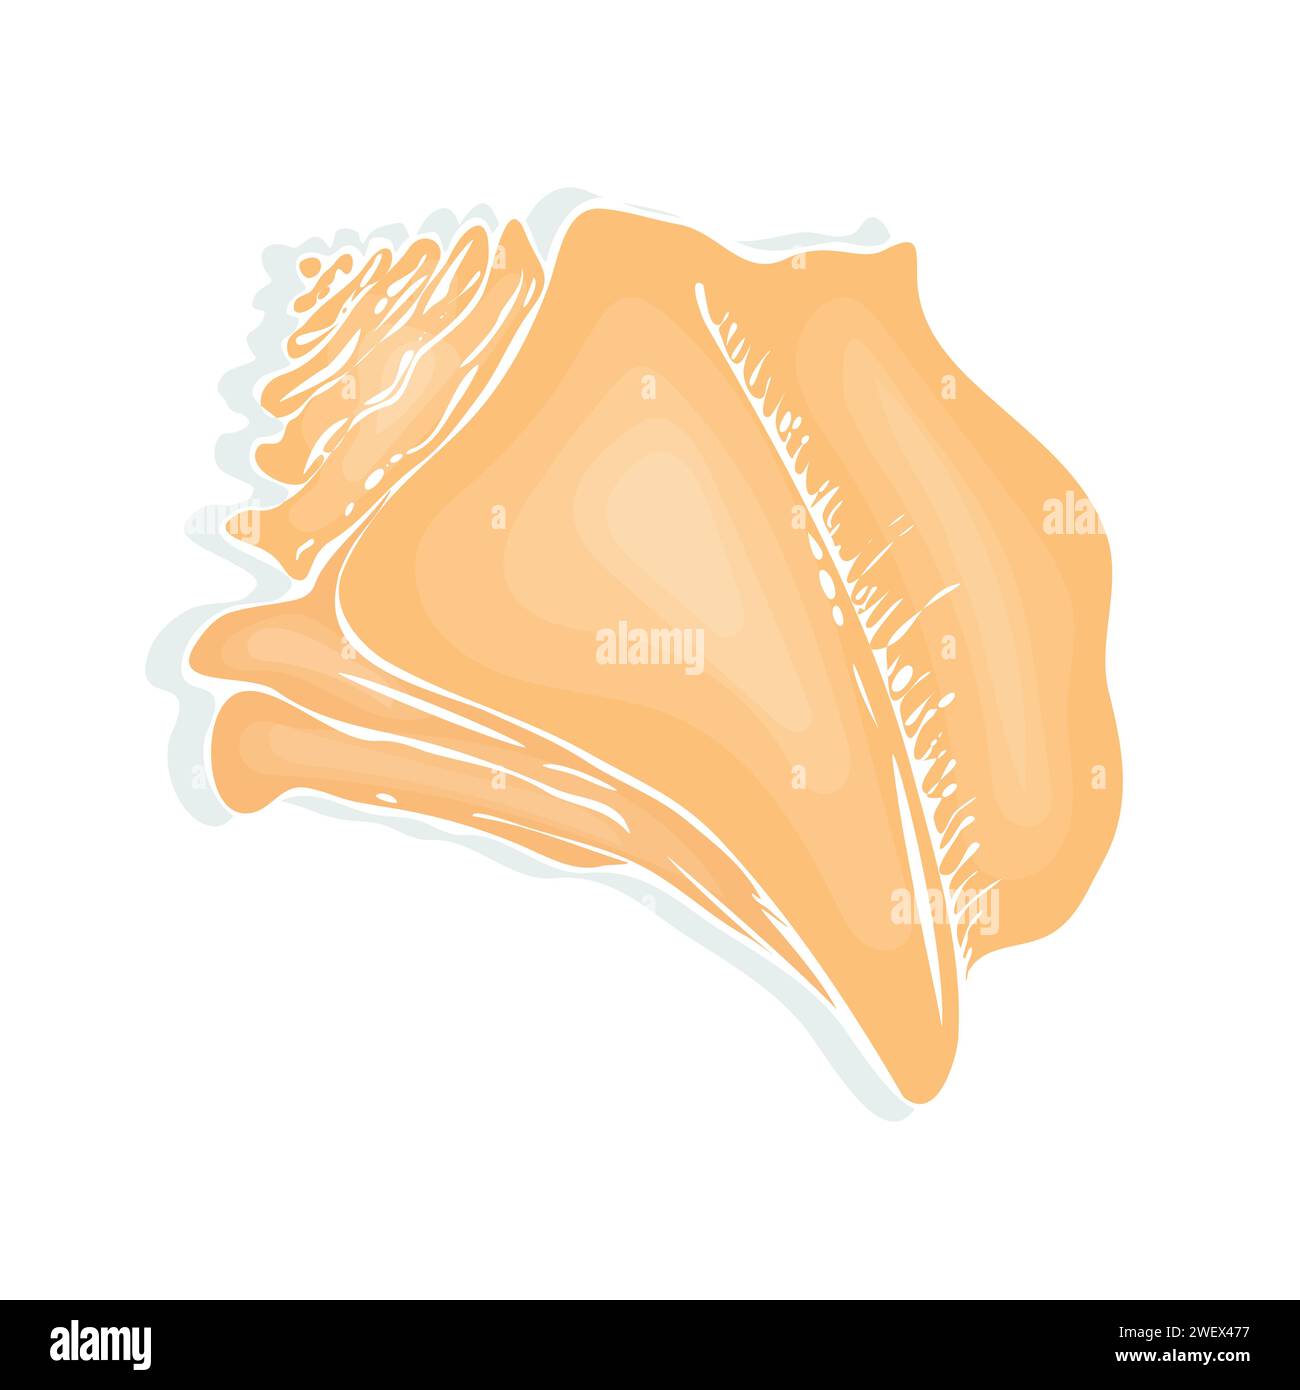 L'immagine presenta un guscio marino giallo meticolosamente dipinto a mano, che si concentra sulla sua texture dettagliata e l'ombreggiatura. Illustrazione Vettoriale